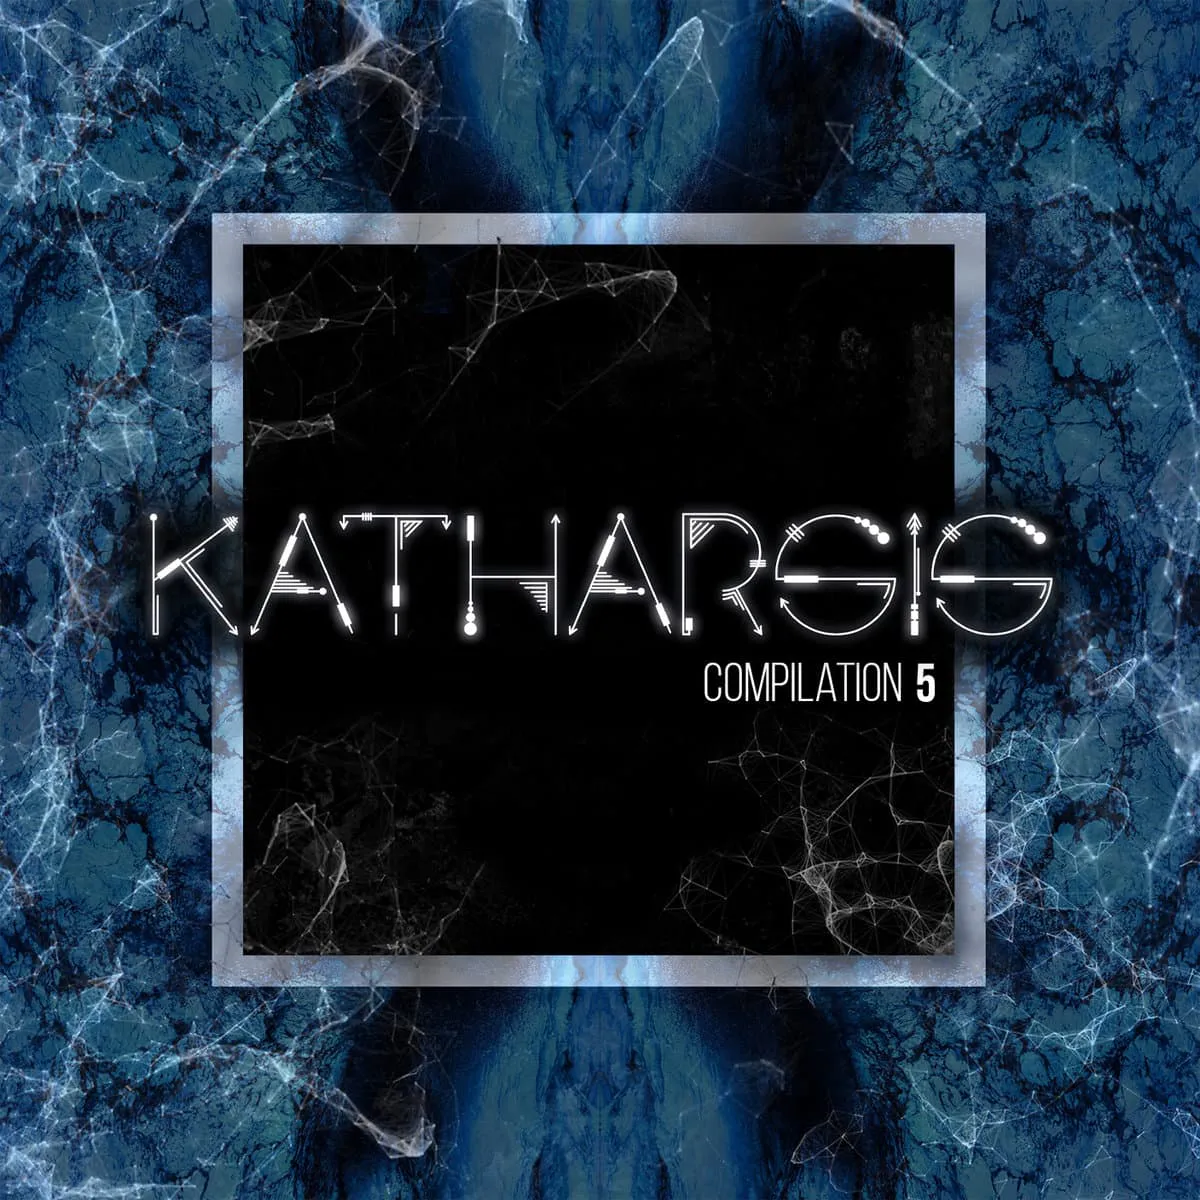 Katharsis Compilation 5